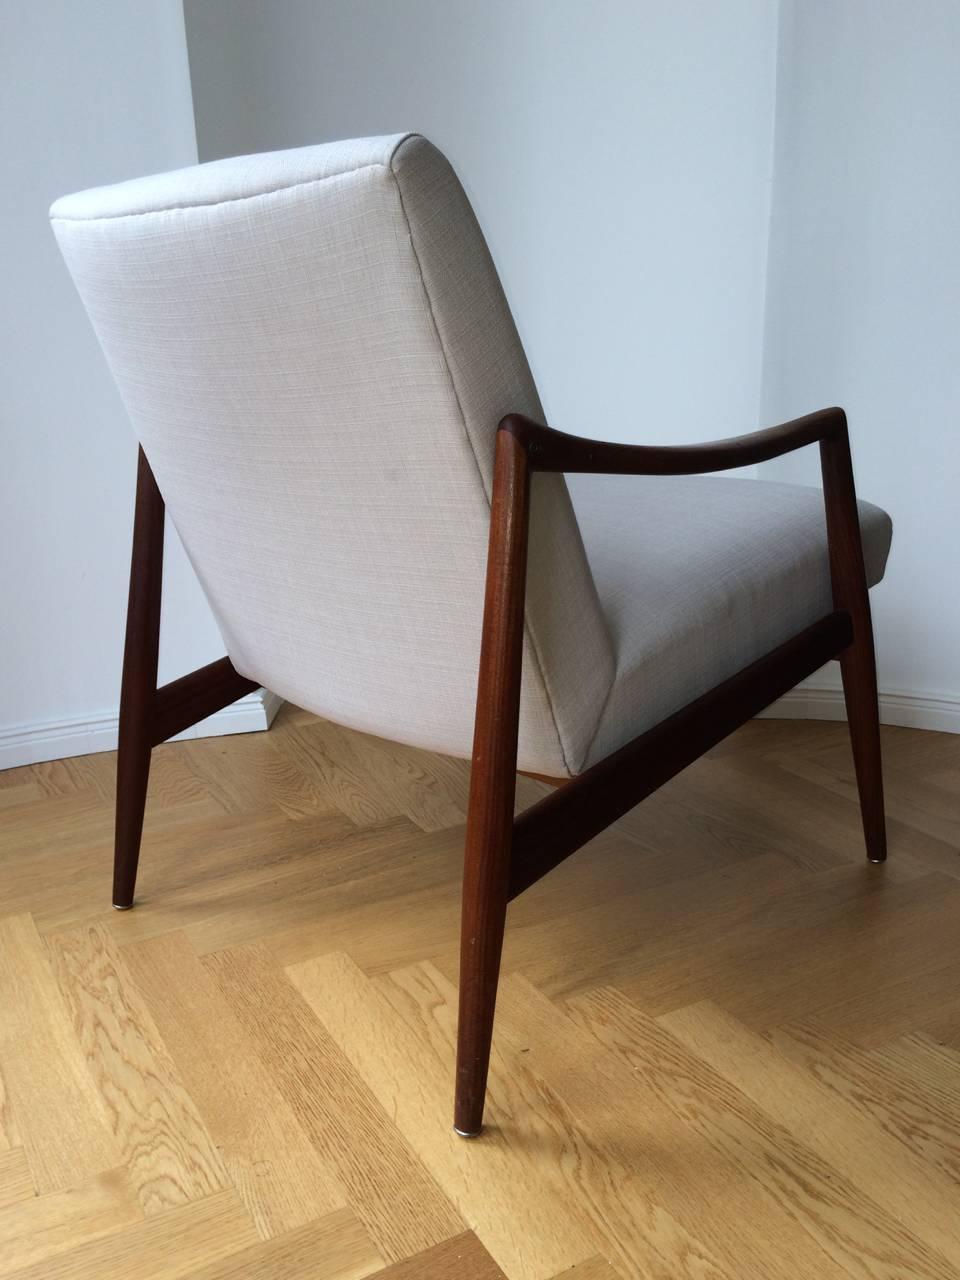 Mid-Century Teak Easy Chair by Hartmut Lohmeyer for Wilkhahn New Upholstery 1960 For Sale 2